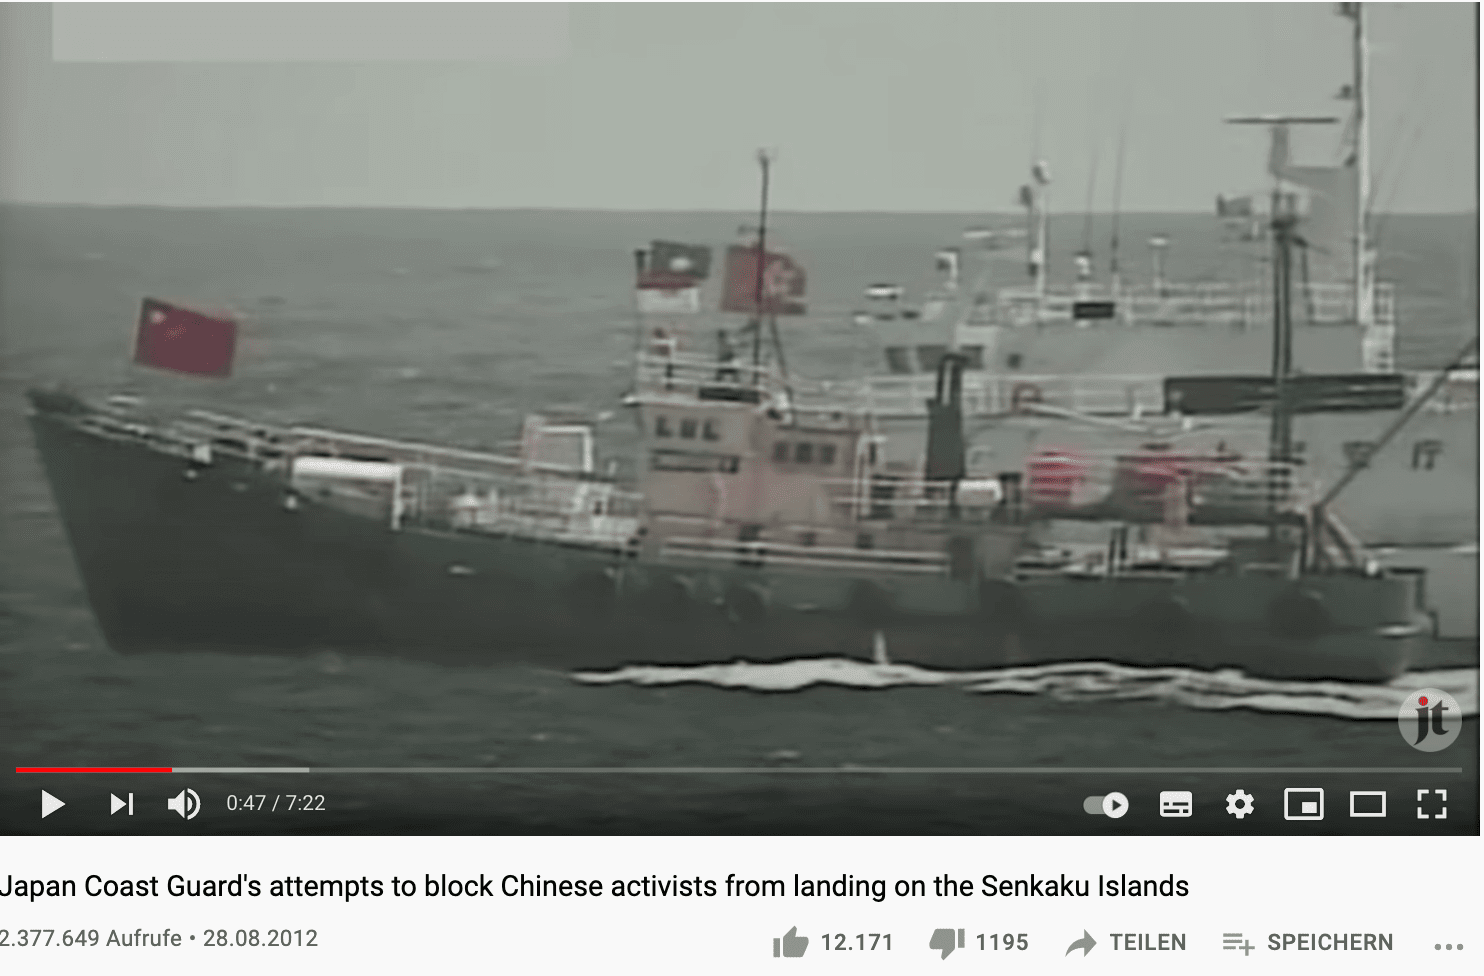 Schiff mit China-Flagge vor den Senkaku-Inseln